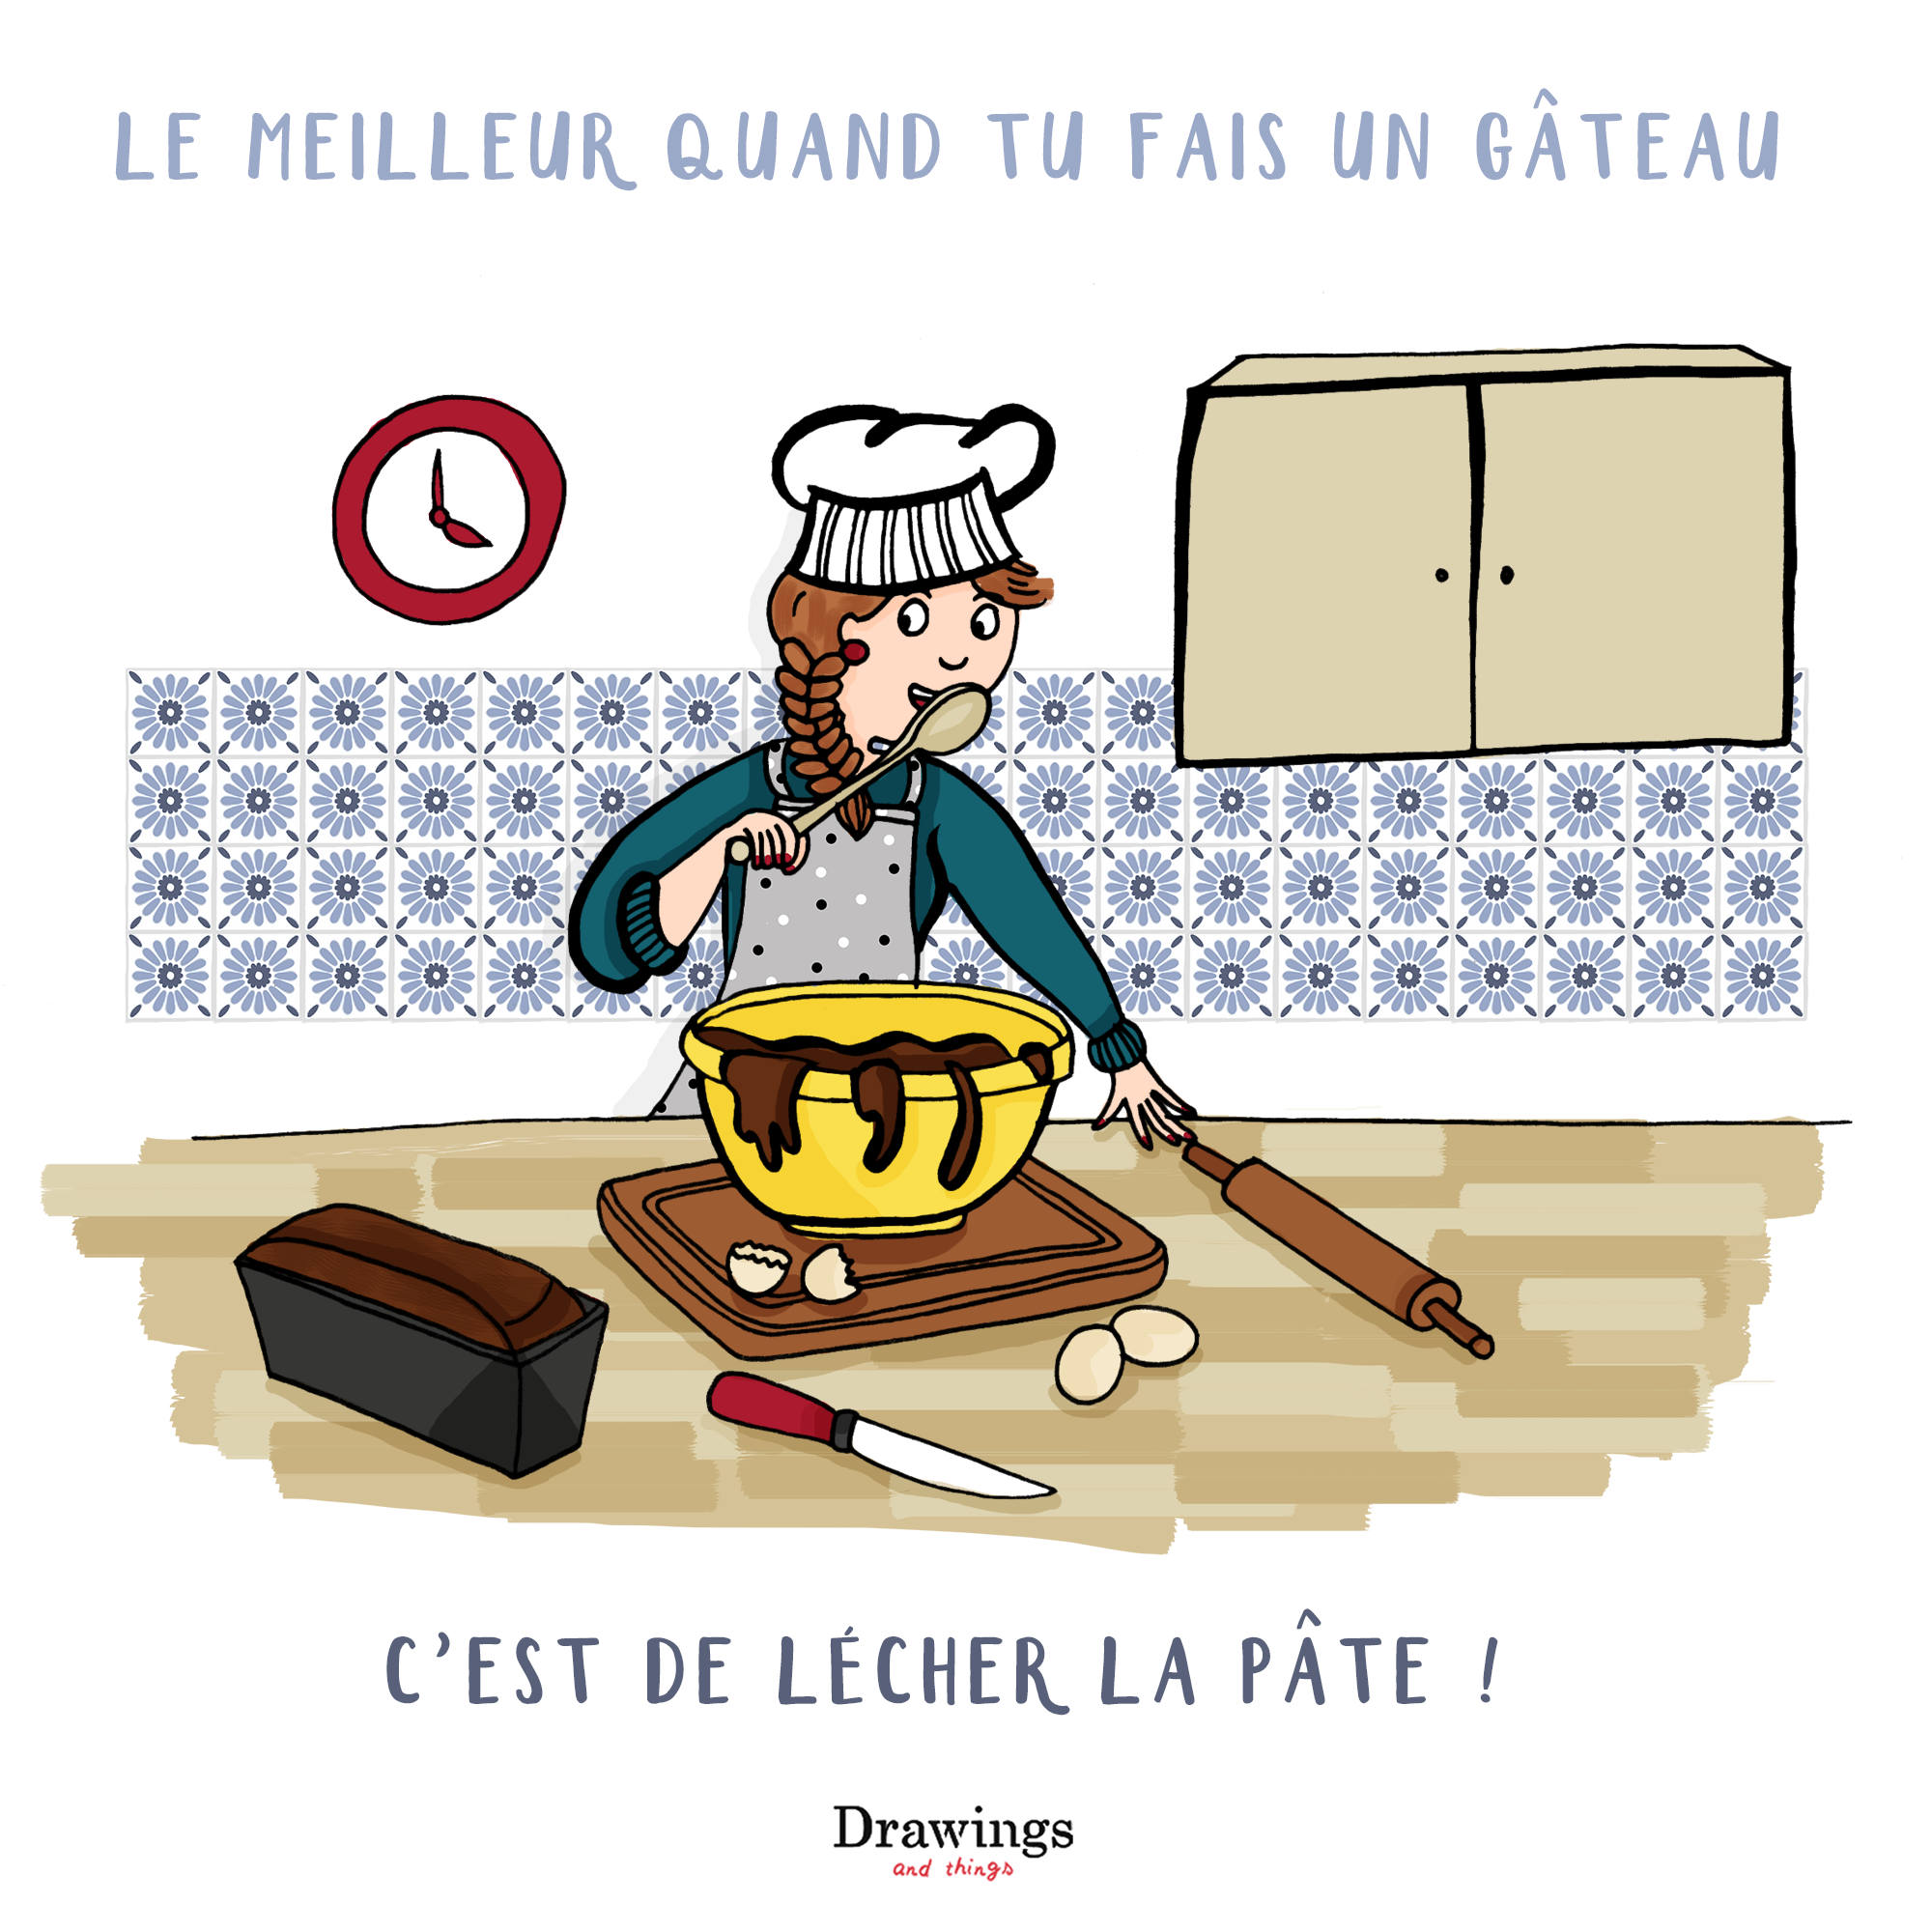 Lecher une pâte à gateau - Illustration by Drawingsandthings.com